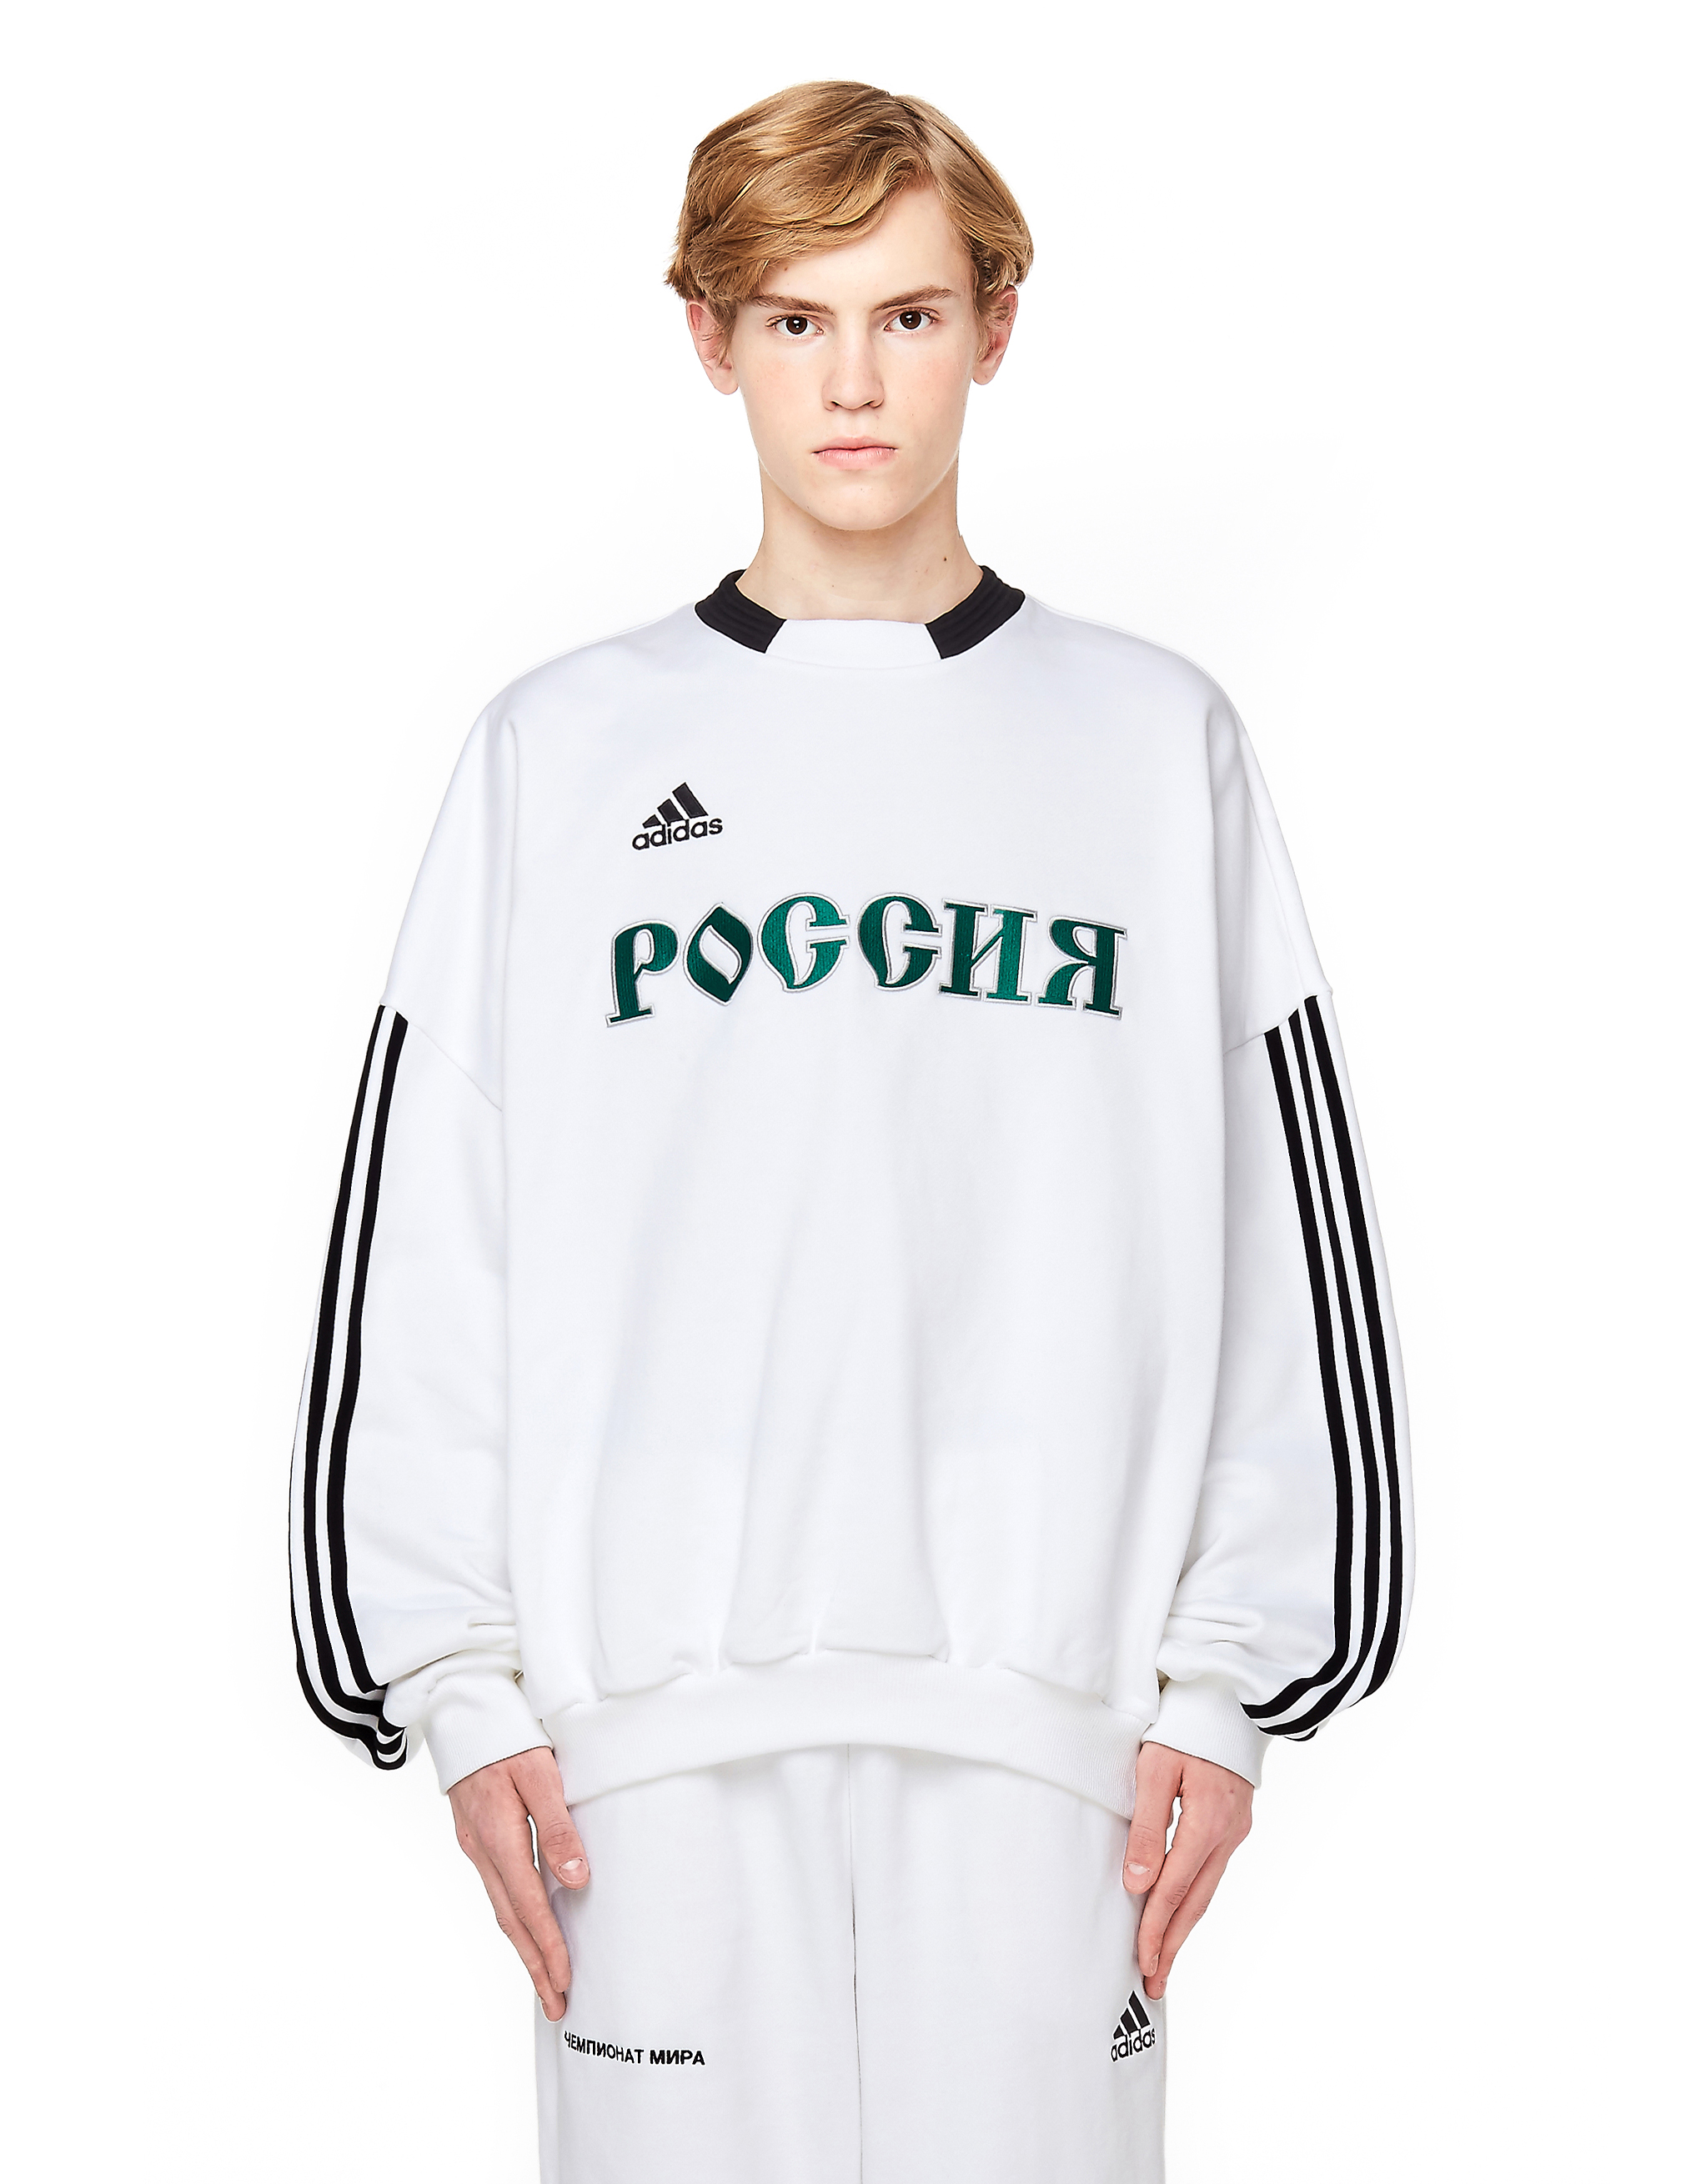 gosha rubchinskiy adidas sweater white